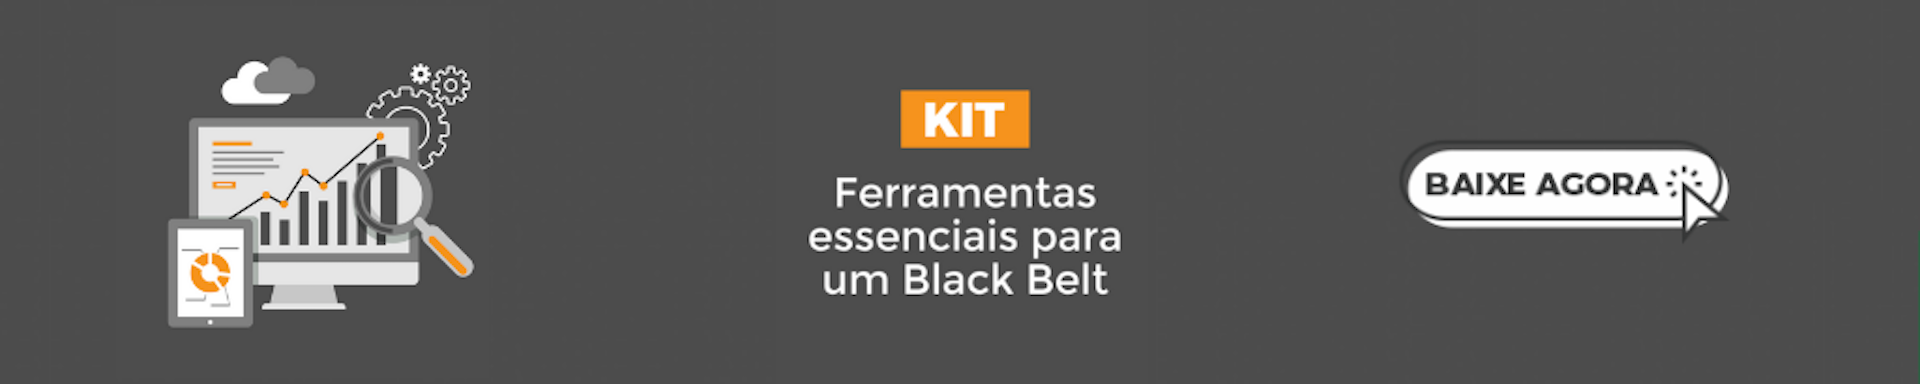 Banner do kit Ferramentas essenciais para um Black Belt.